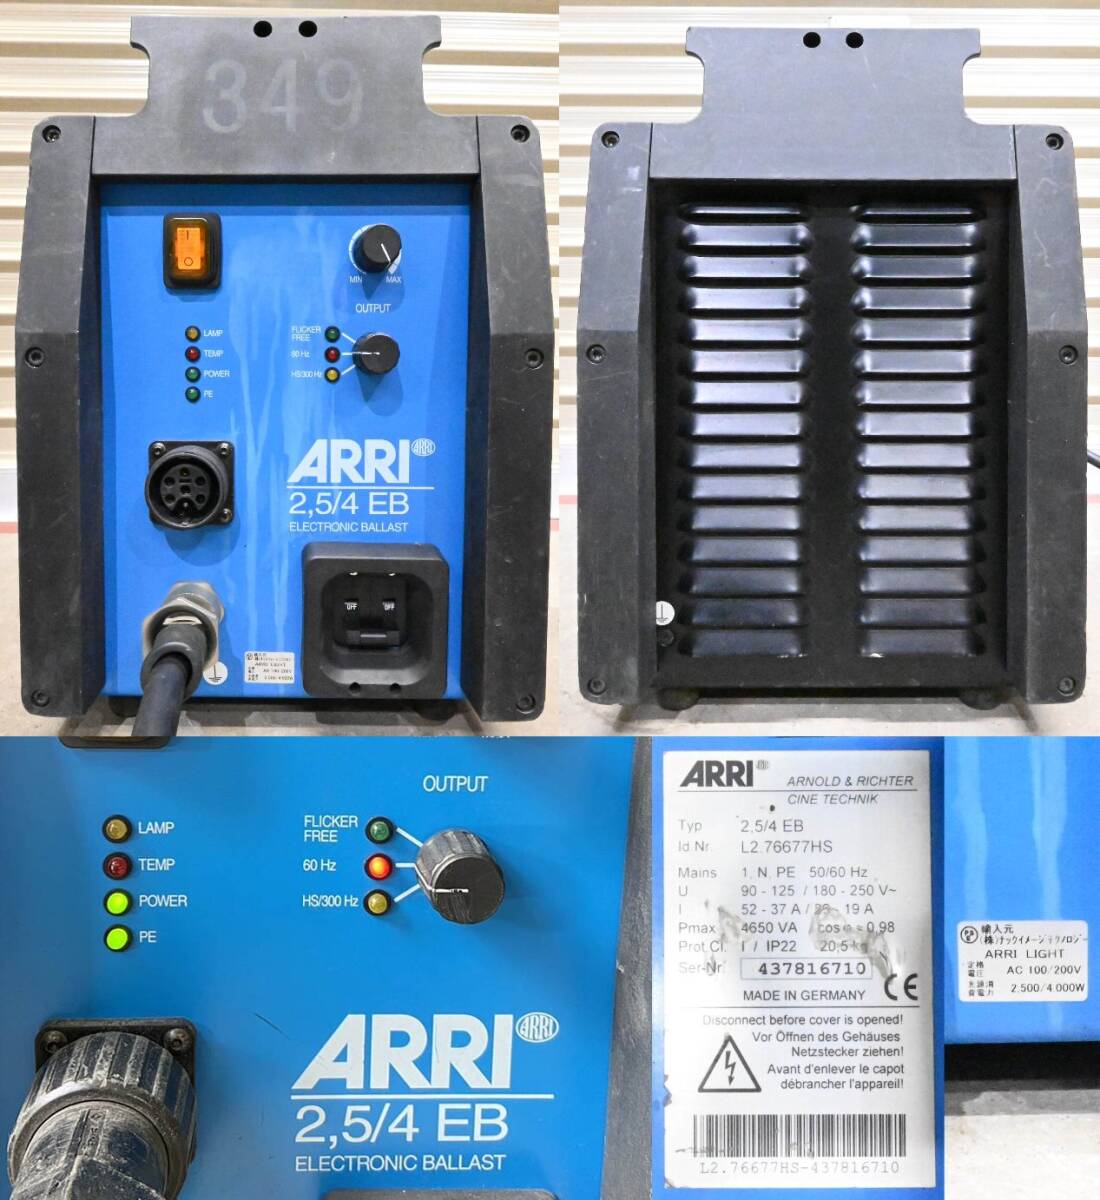 H661*ARRI есть ARRI X 40/25 4000W ARRI 2.5/4 EB ELECTRRONIC BALLAST балласт фотосъемка Mai шт. освещение подвижный светильник f Lad свет 